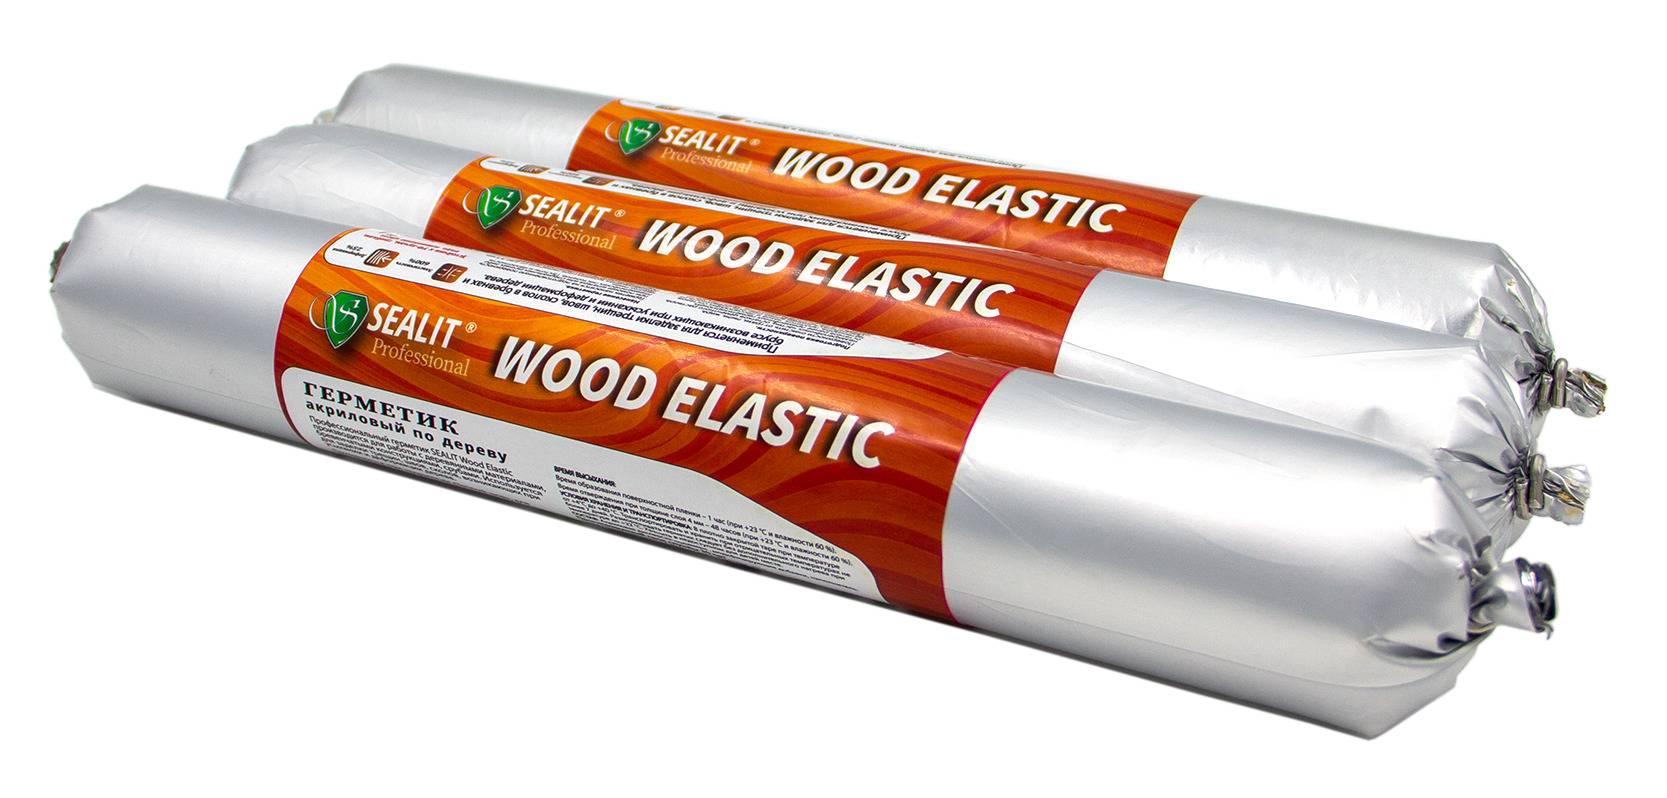 Герметик для дерева акриловый Sealit Wood Elastic, 900 гр, Бук герметик для дерева акриловый sealit wood elastic 900 гр дуб